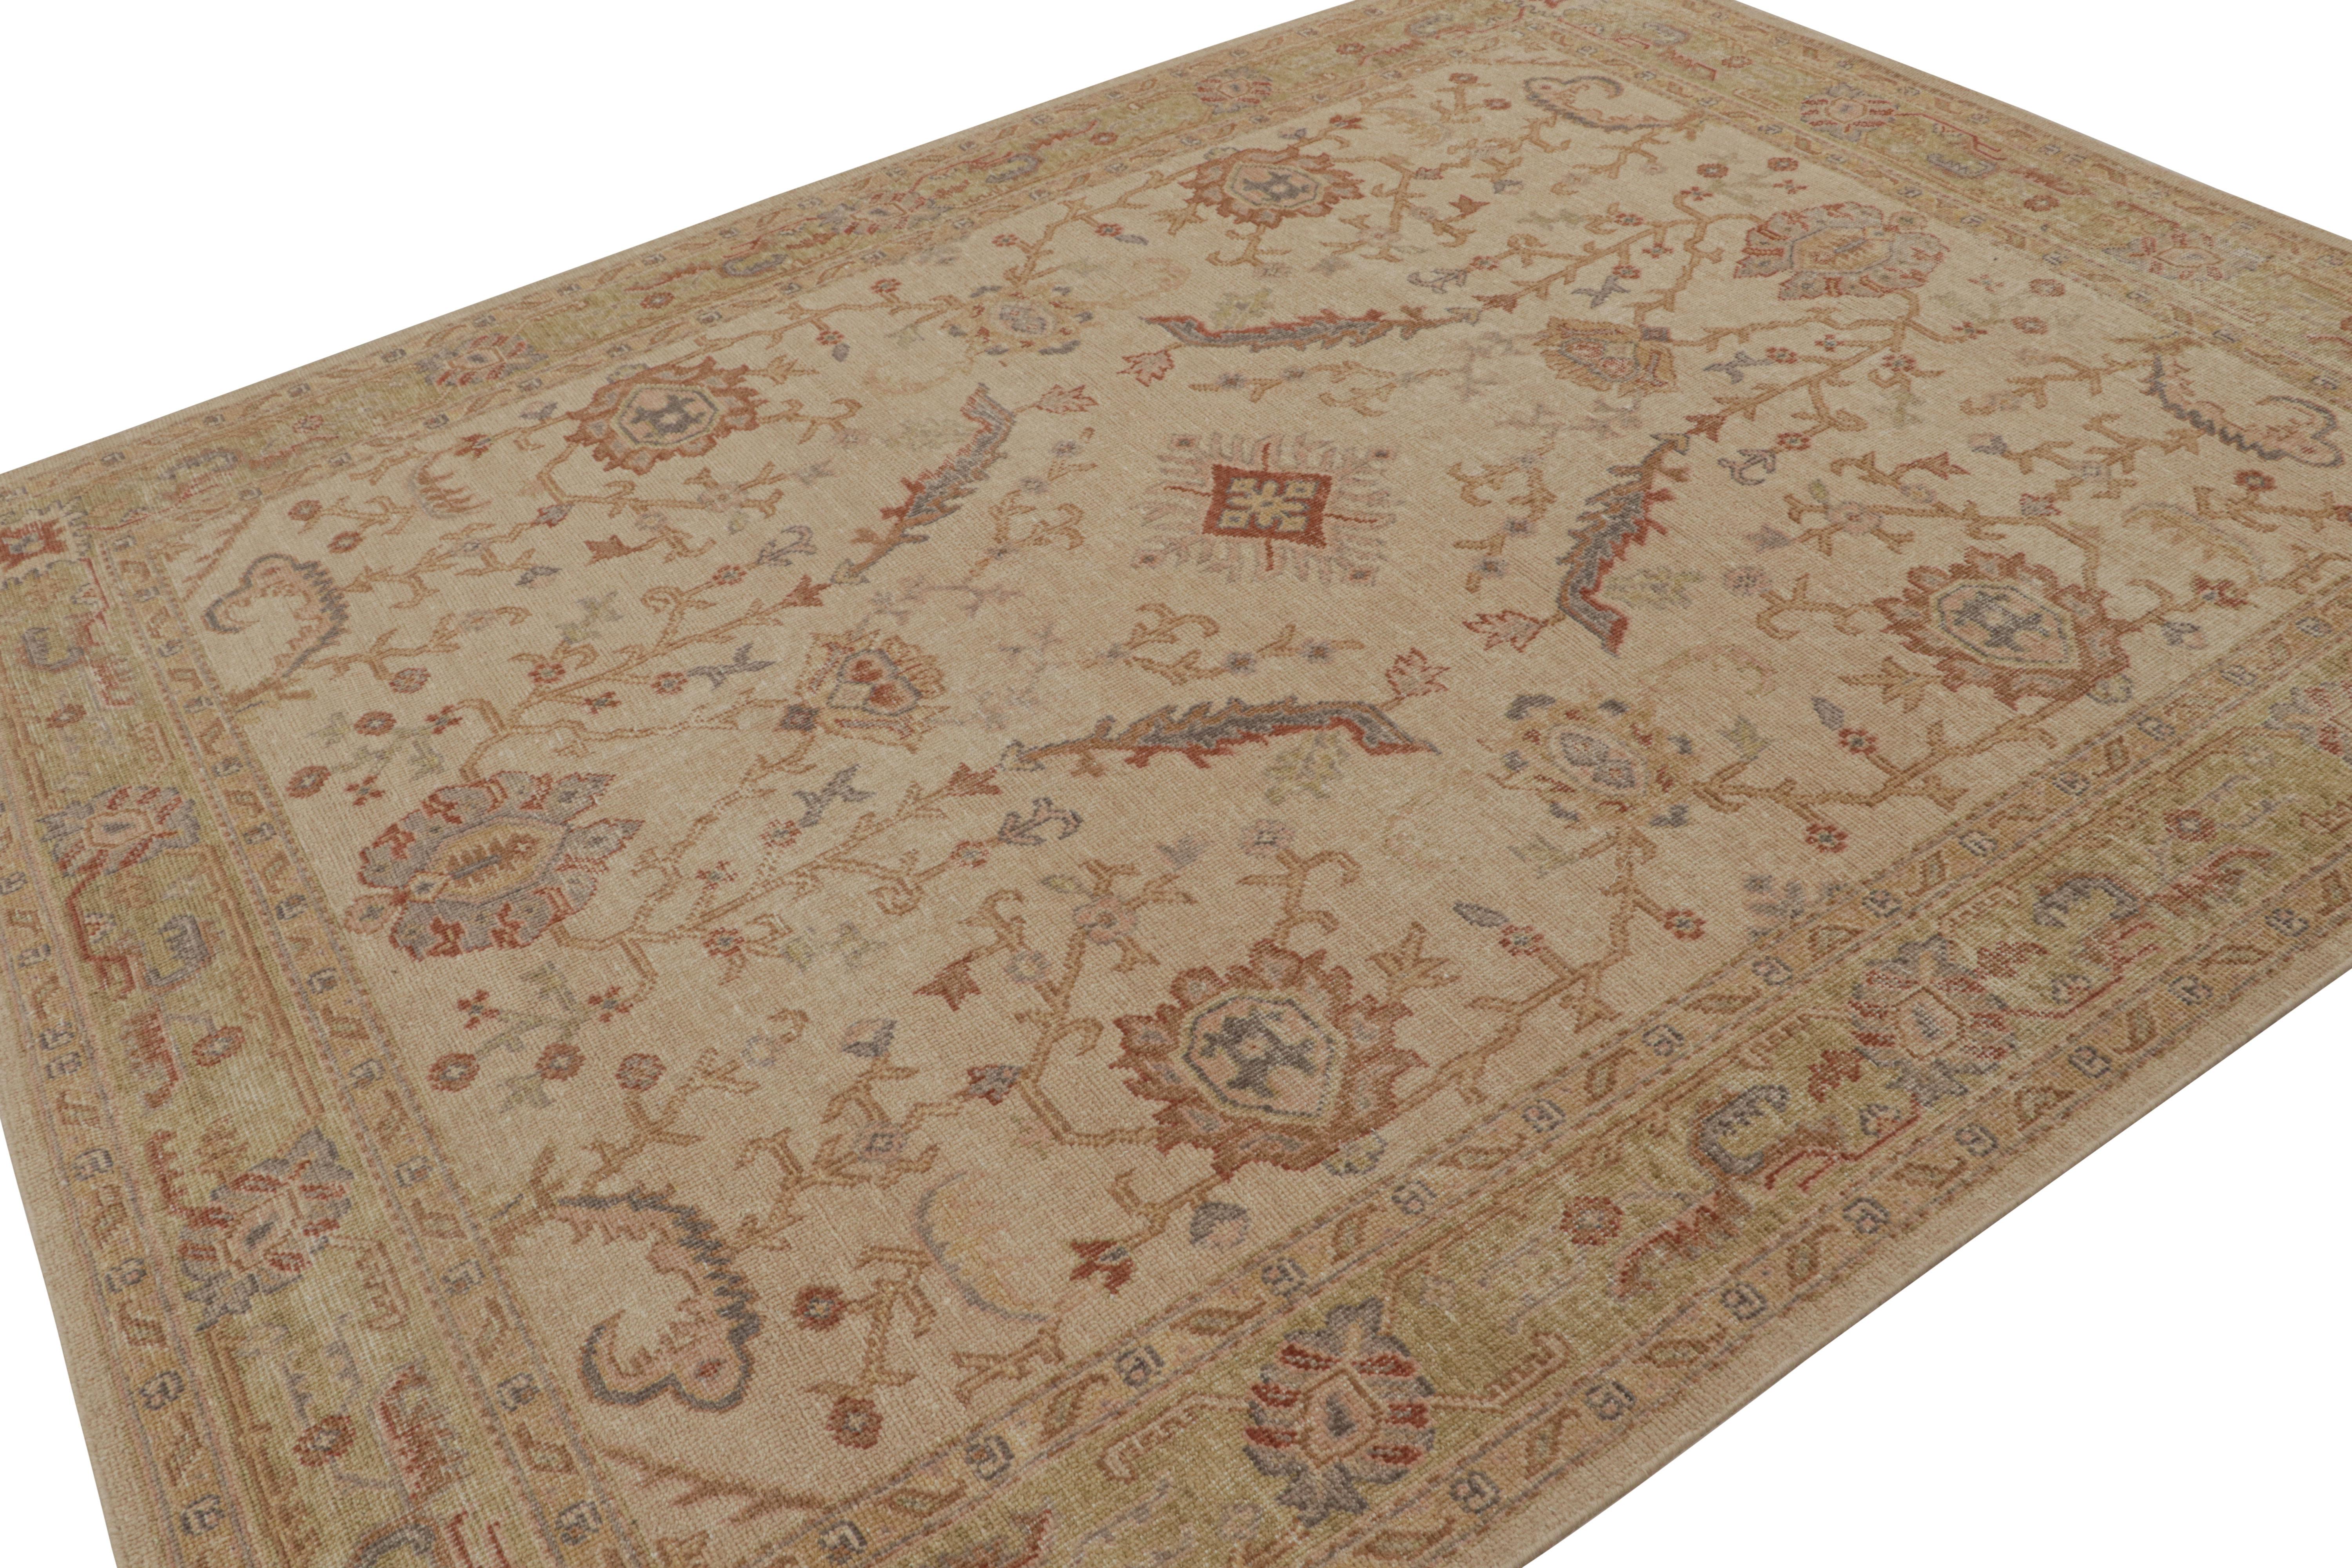 Inspiré des tapis Oushak, ce tapis moderne 8x10 de style vieilli est issu de la collection Homage de Rug & Kilim. Noué à la main en laine.

Sur le Design :

Dans cette pièce, le champ beige-brun et la bordure vert chartreuse soulignent des motifs